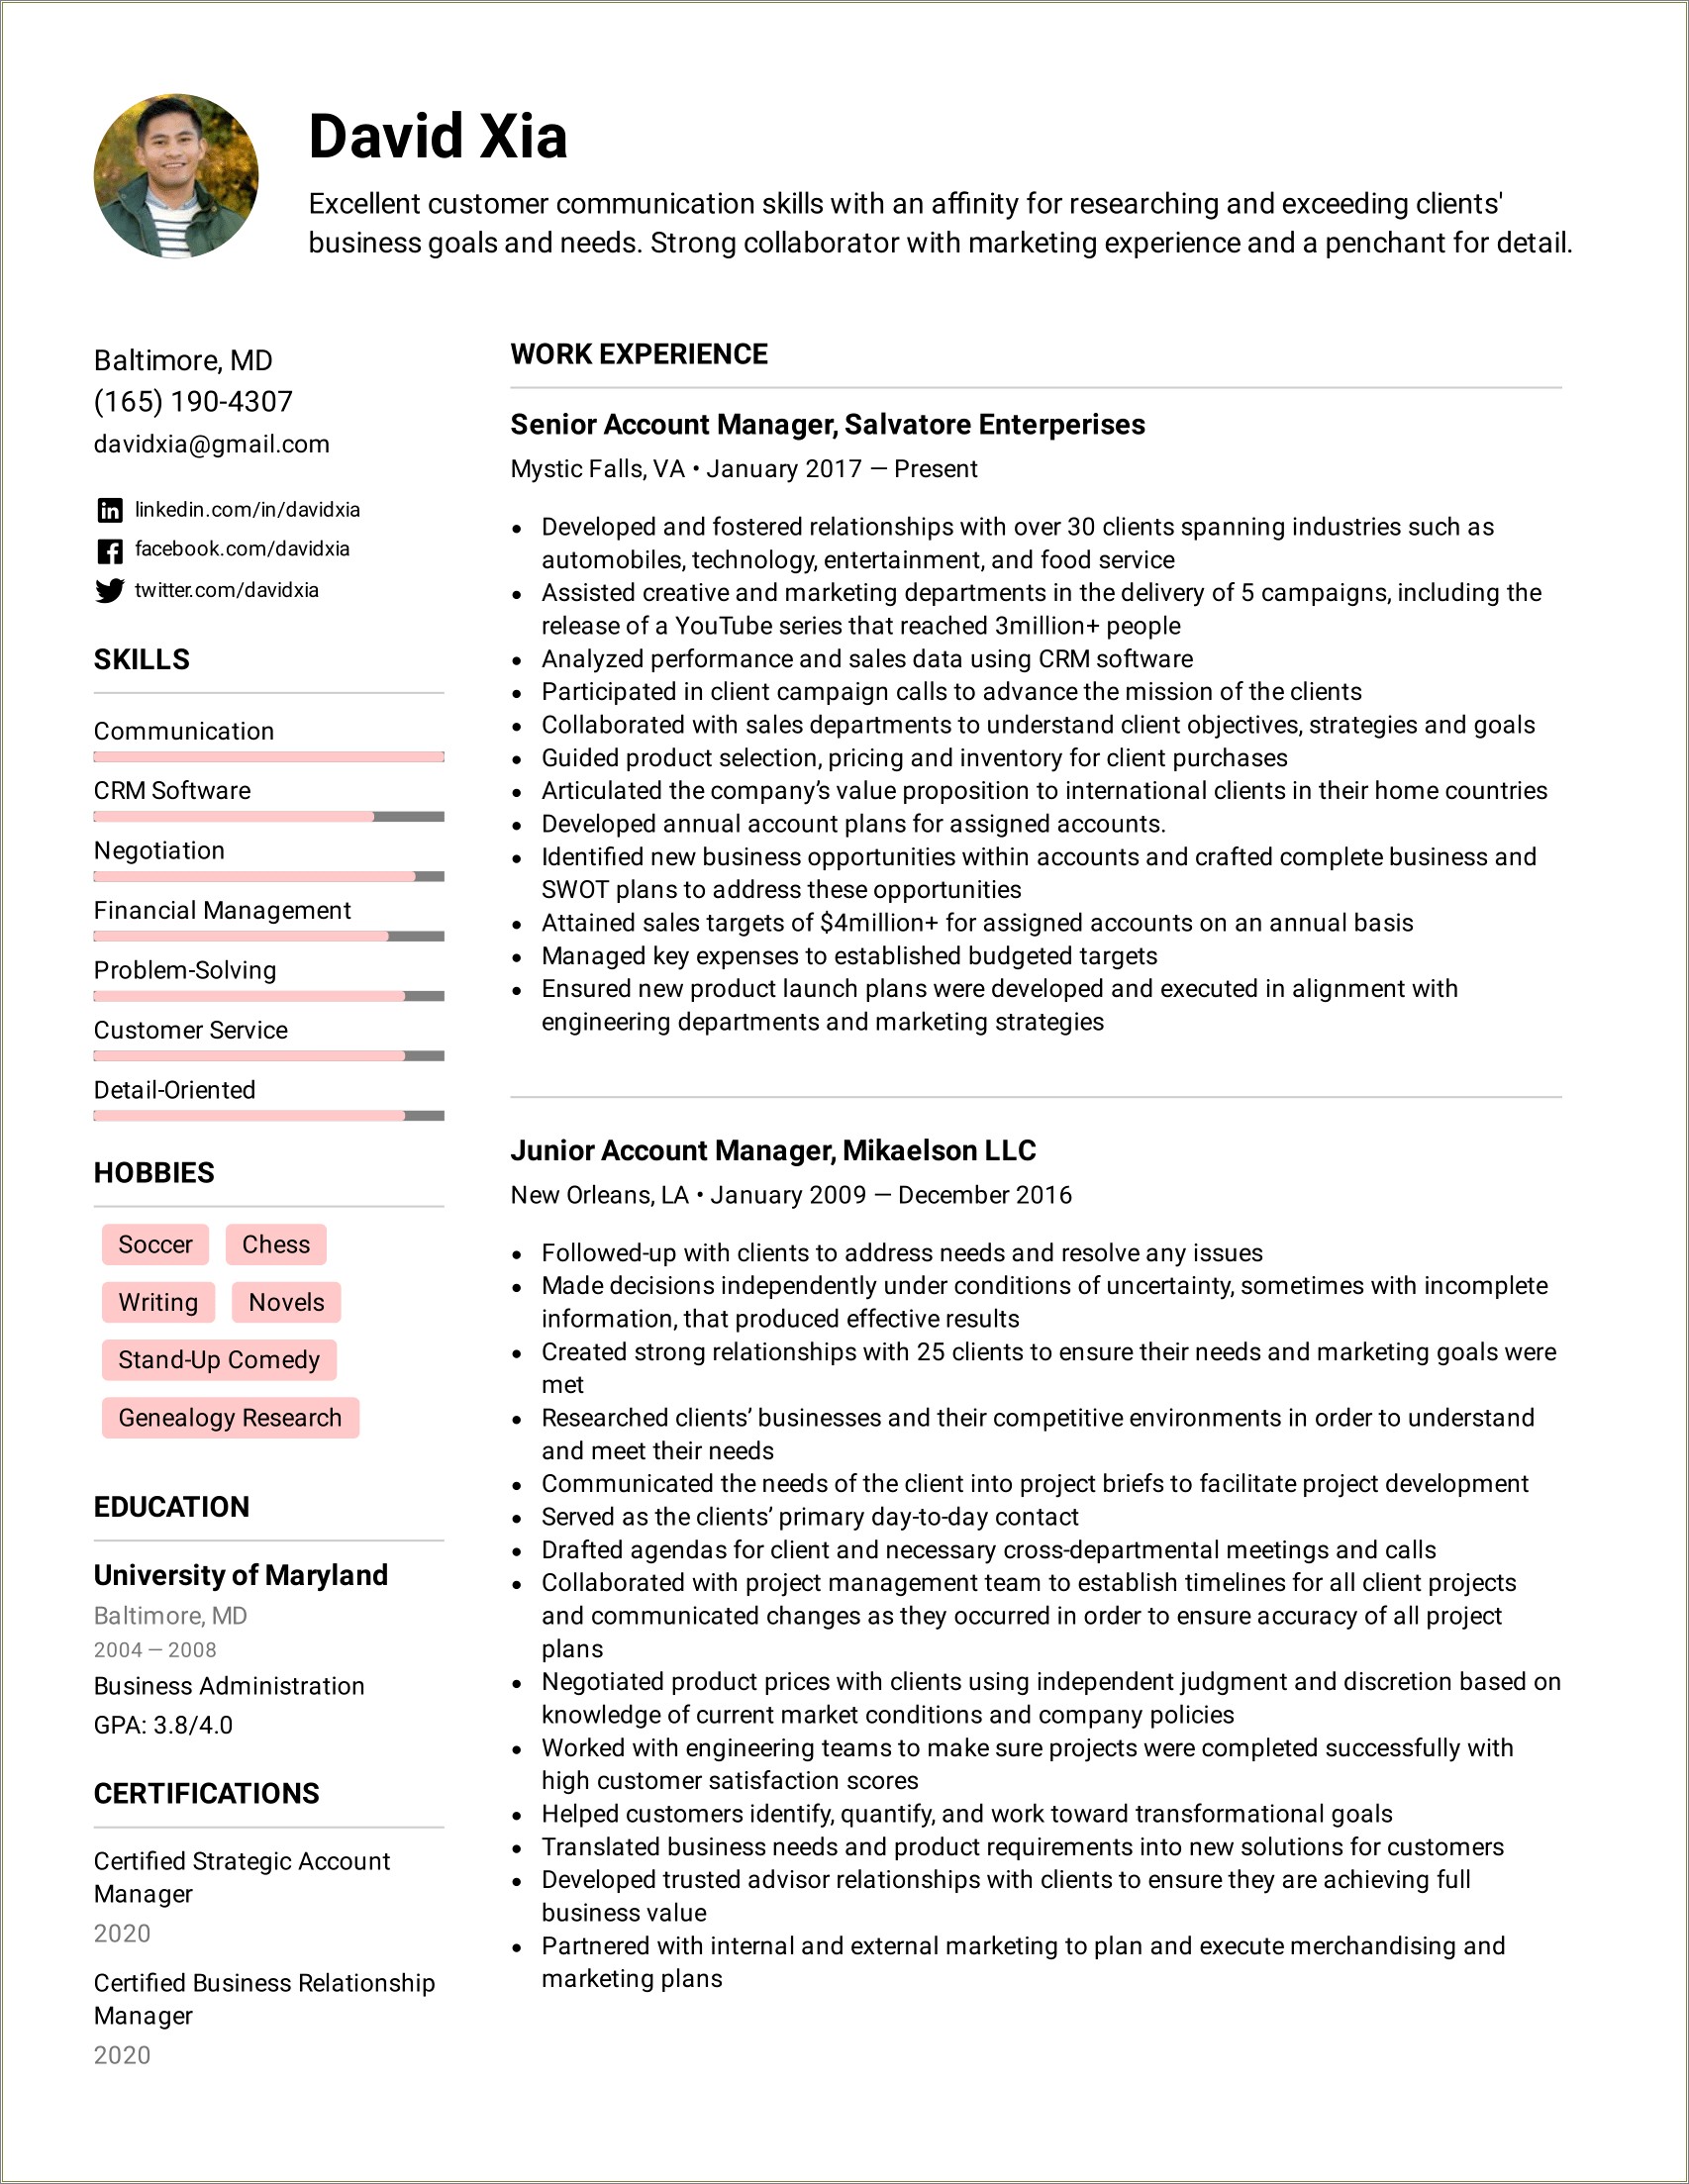 Service Executive Job Description For Resume